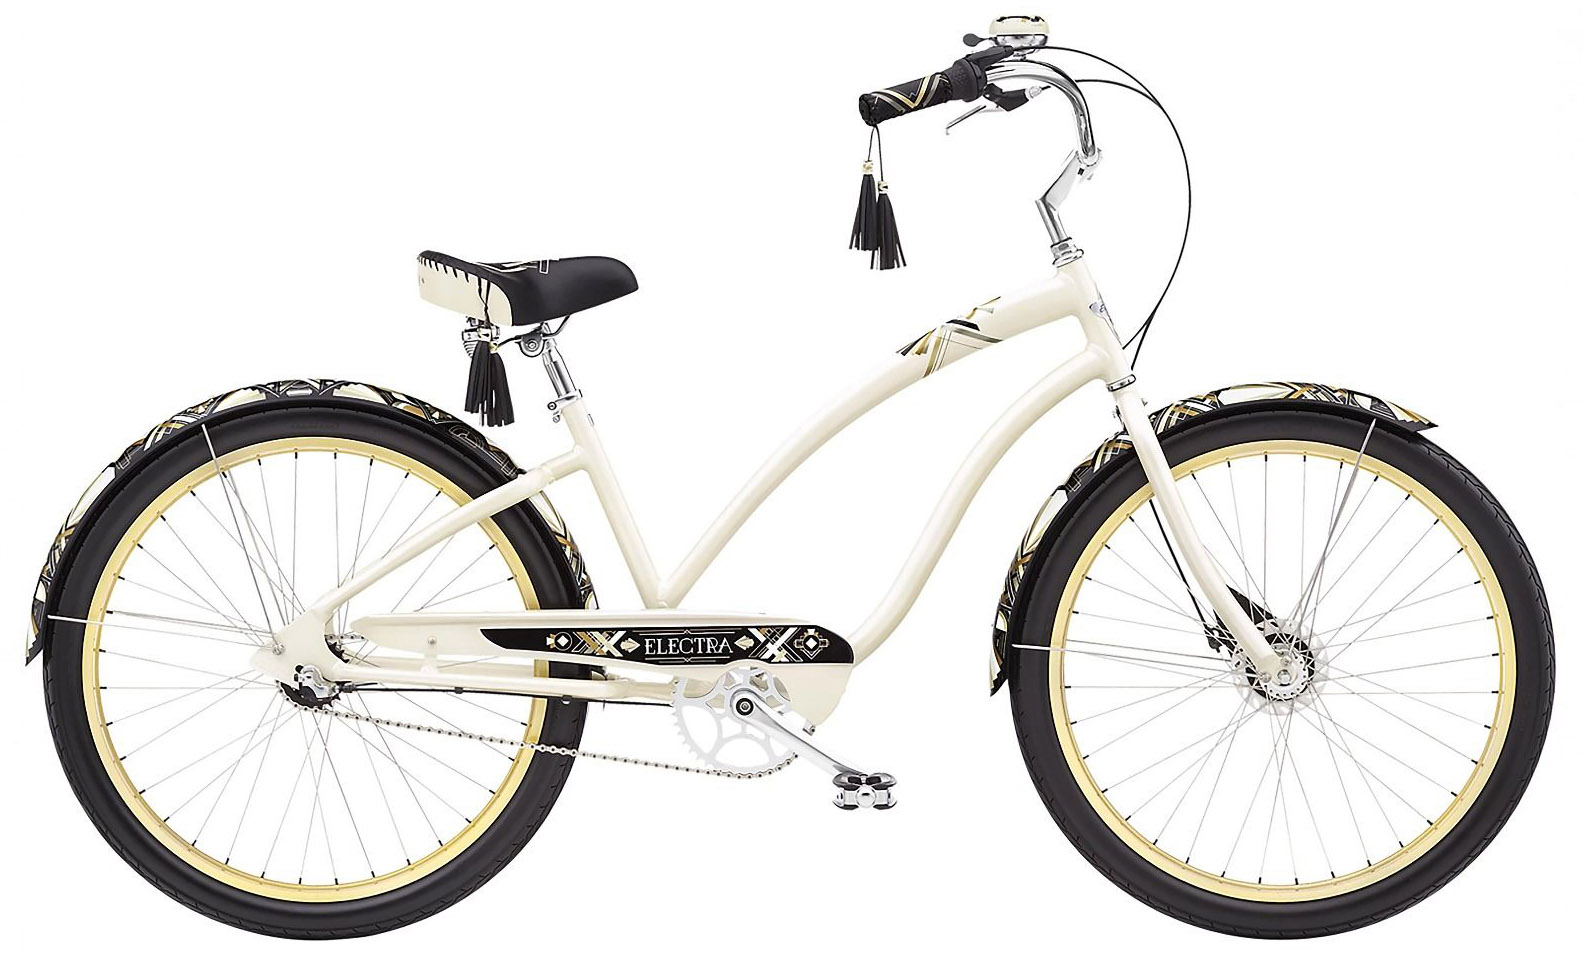  Отзывы о Женском велосипеде Electra Zelda 3i 2022